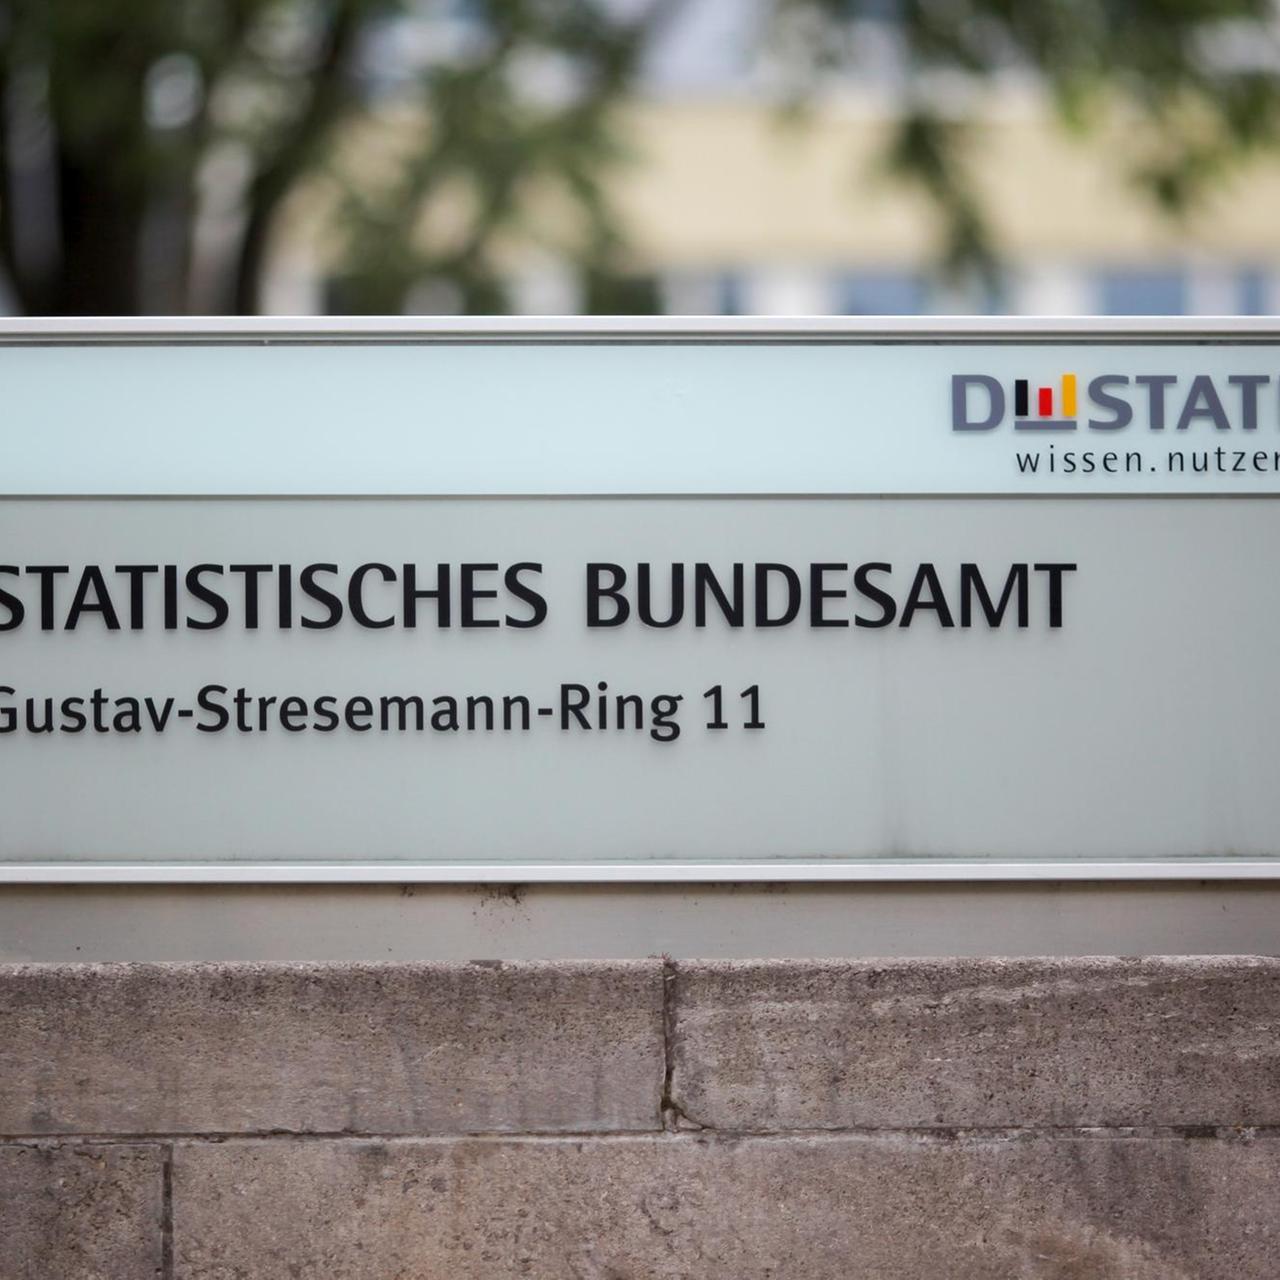 Blick auf den Hauptsitz des Statistischen Bundesamtes, aufgenommen am 23.08.2013 in Wiesbaden (Hessen). Foto: Fredrik von Erichsen/dpa | Verwendung weltweit